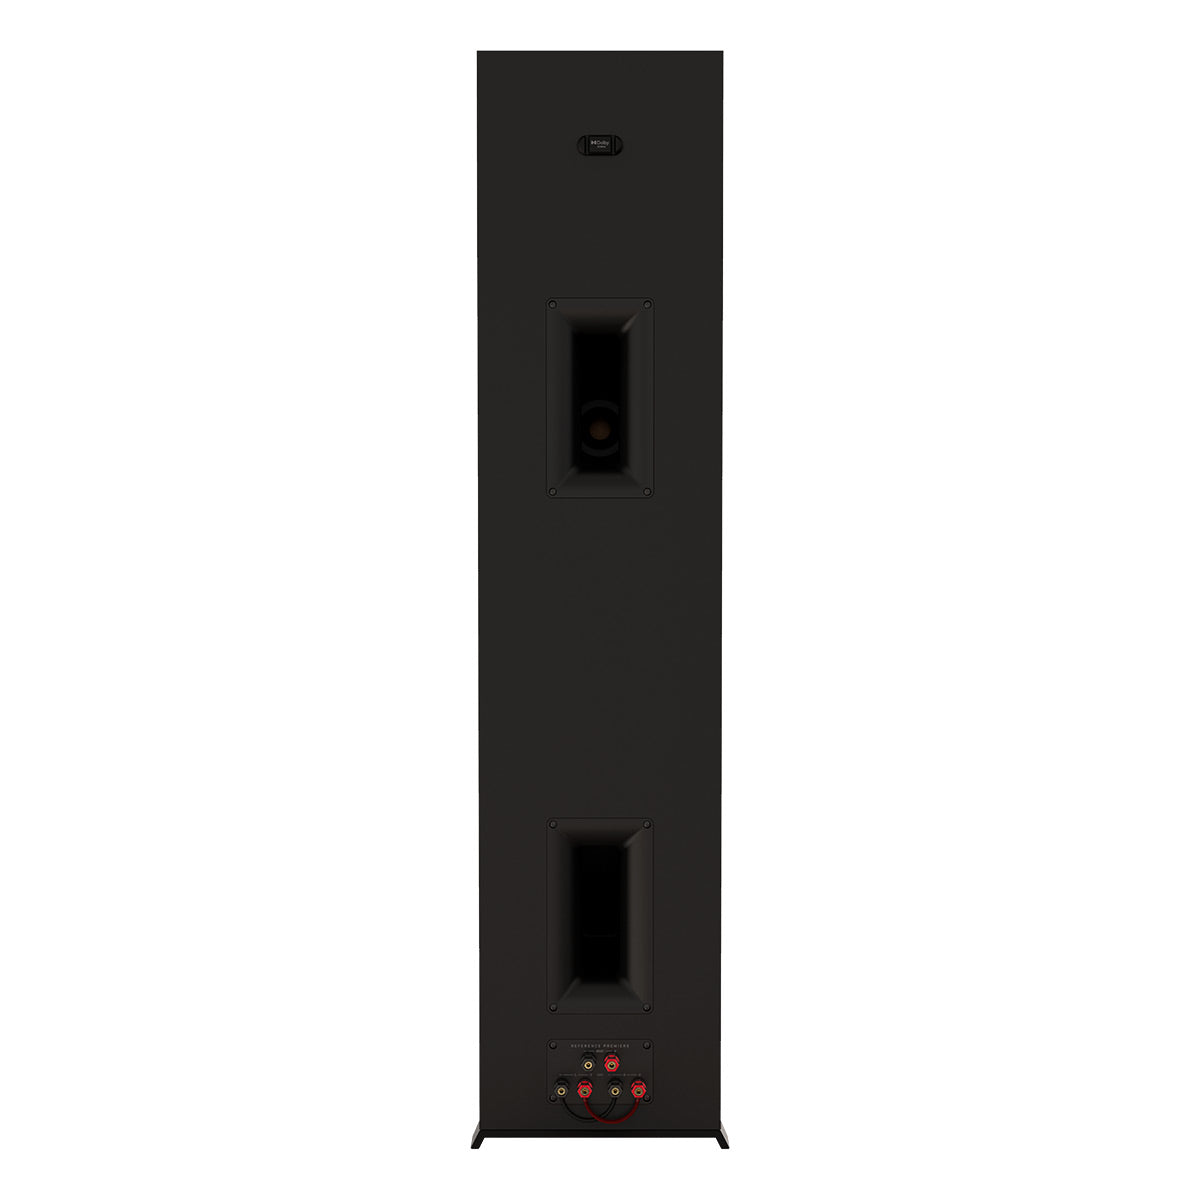 Klipsch RP-8000F II Reference Premiere Floorstanding Speaker - Each (Walnut)